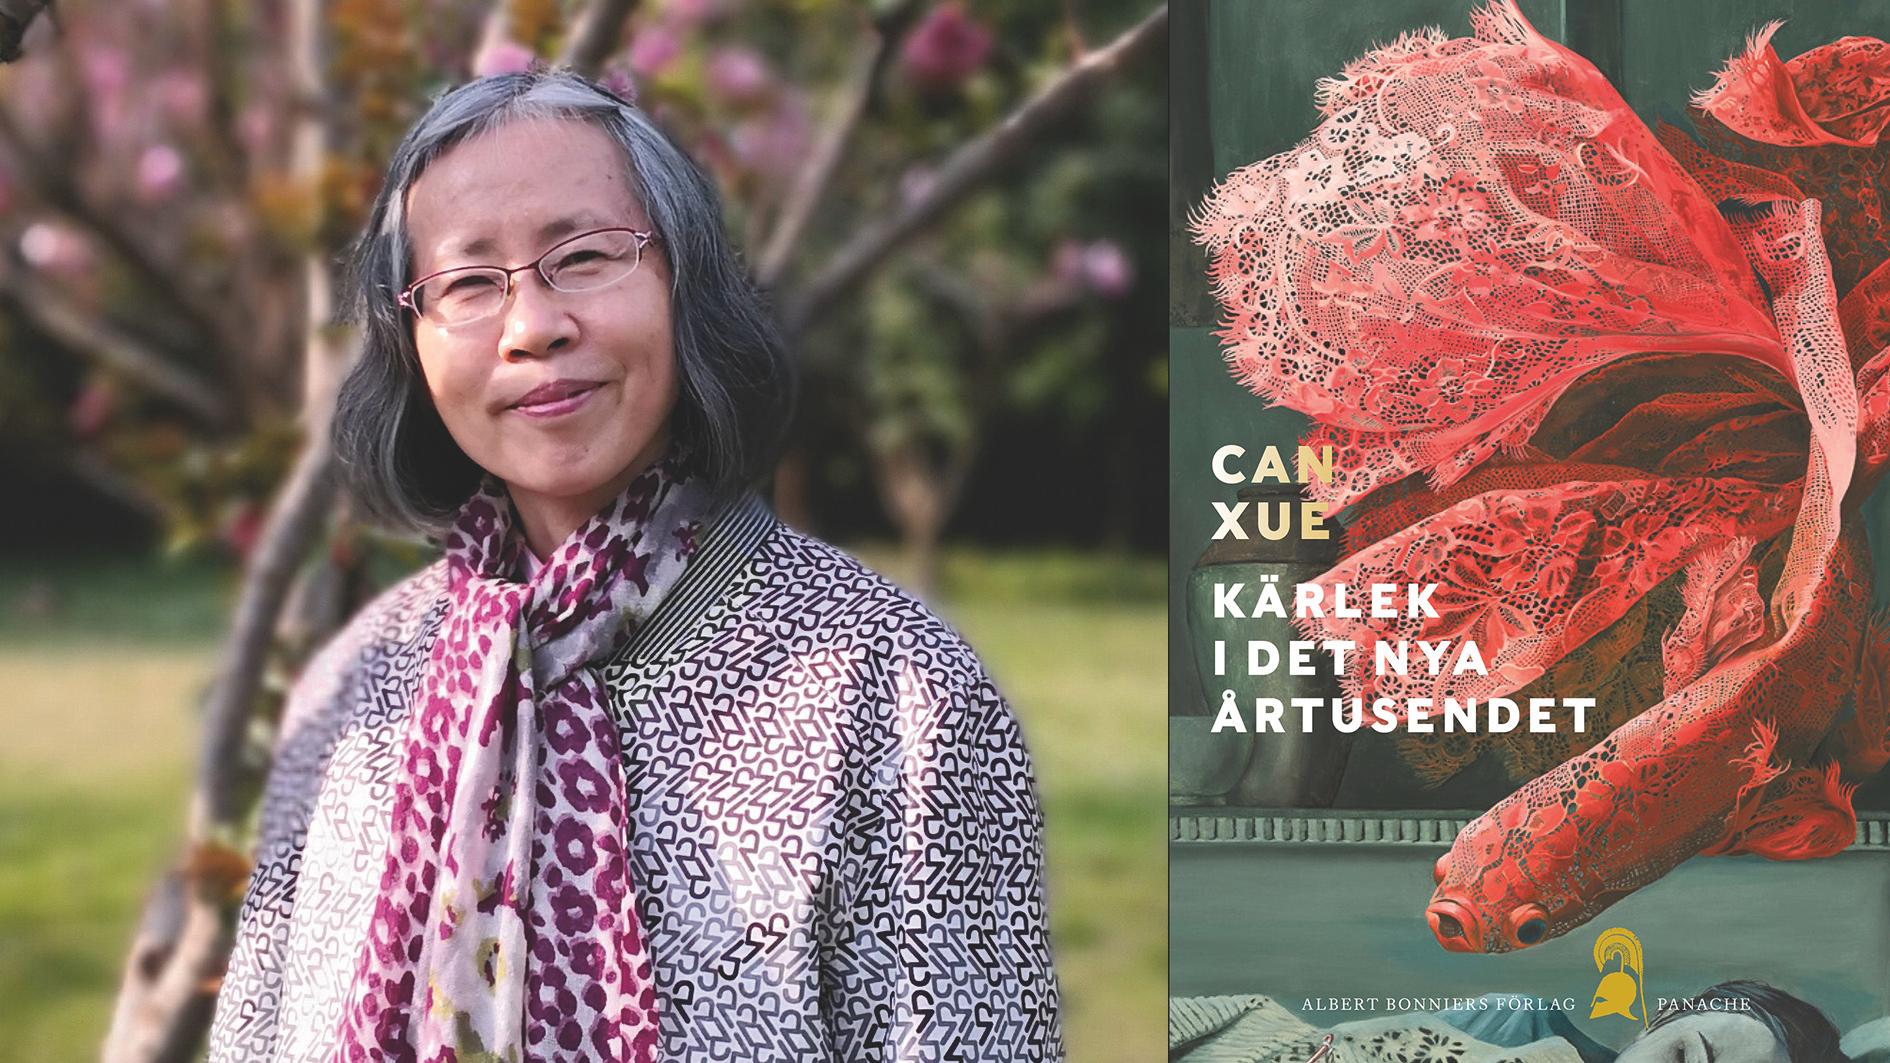 Can Xue (född 1953), kinesisk författare. 1987 kom hennes första novellsamling och året därpå hennes första roman ”Genombrottet”. ”Kärlek i det nya årtusendet” utkom på kinesiska 2013 och finns nu på svenska i översättning av Anna Gustafsson Chen.